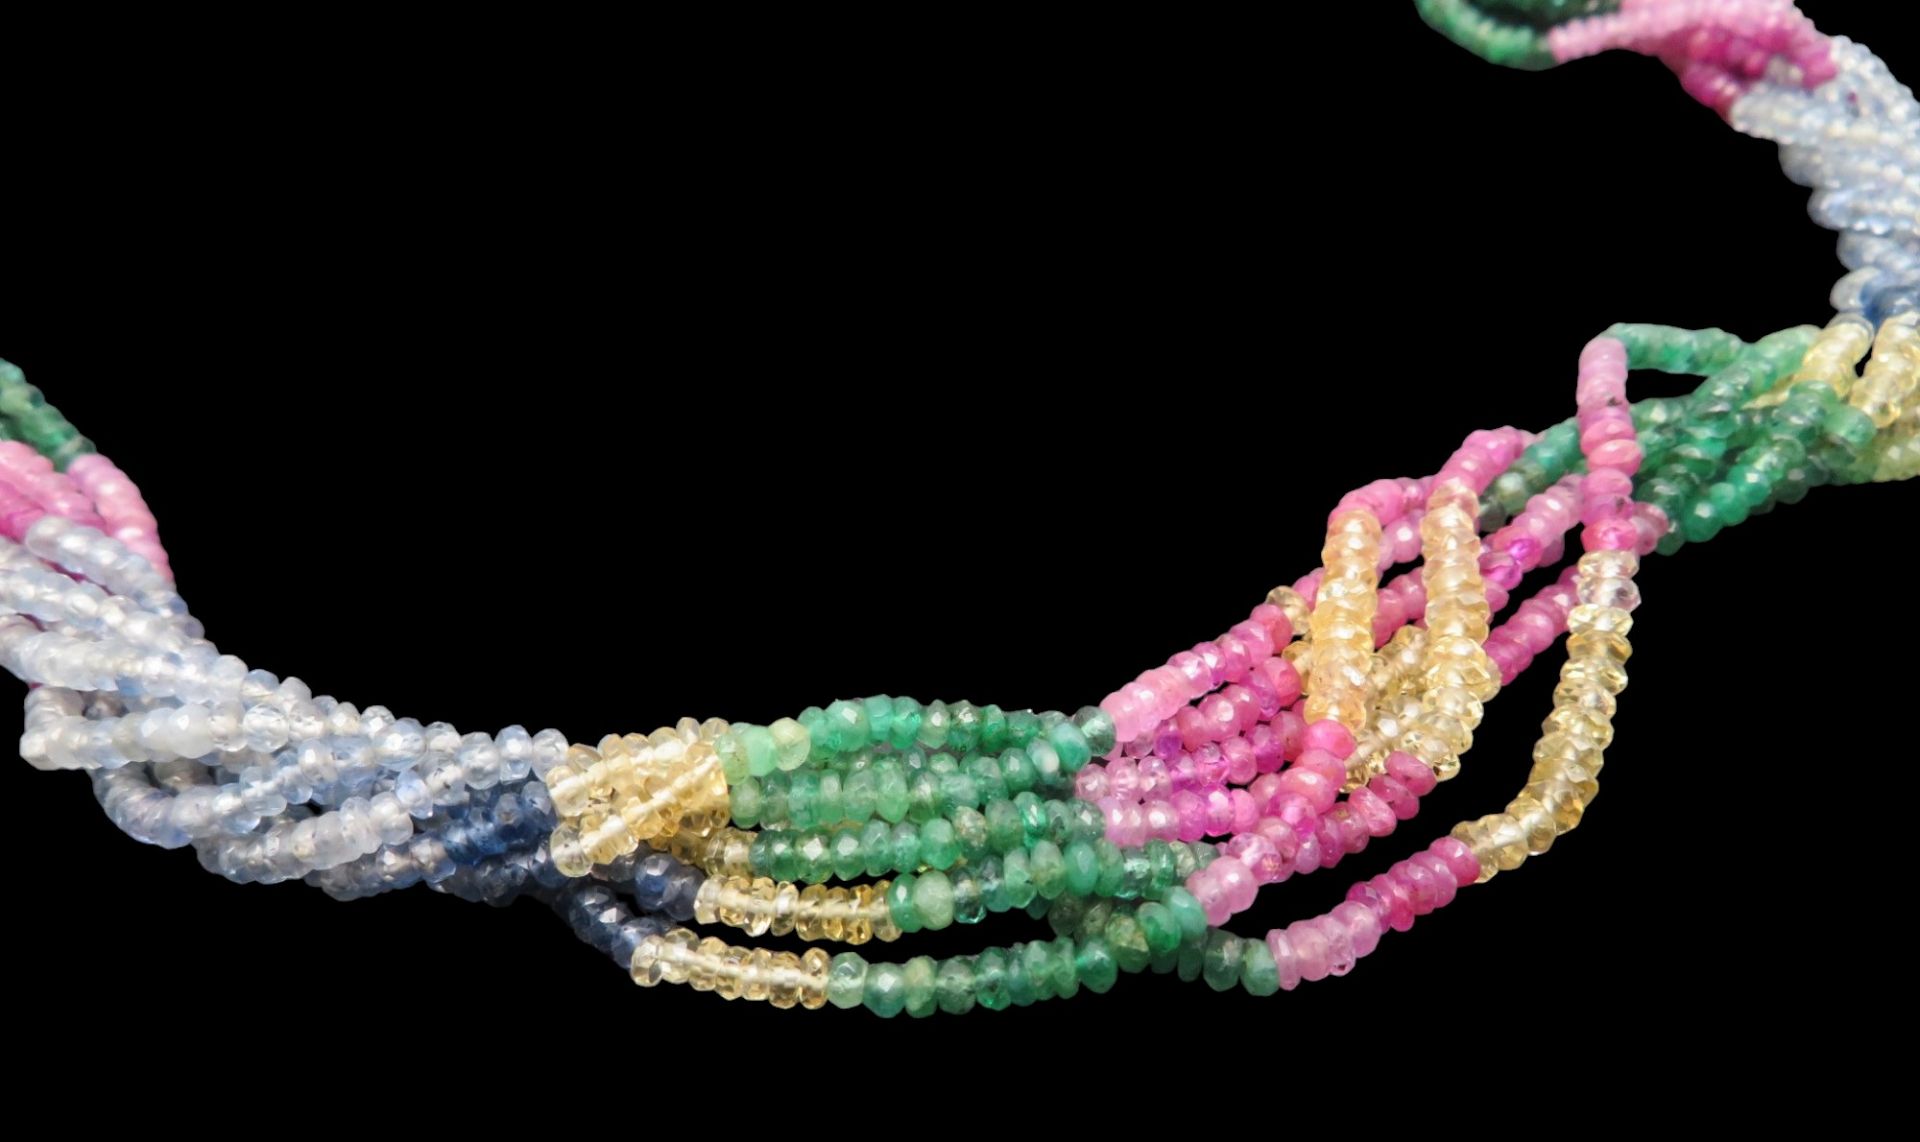 Traumhafte Halskette, Indien, 7 Stränge mit facettierten Rondelle von Smaragden, Saphiren, Rubinen - Image 2 of 2